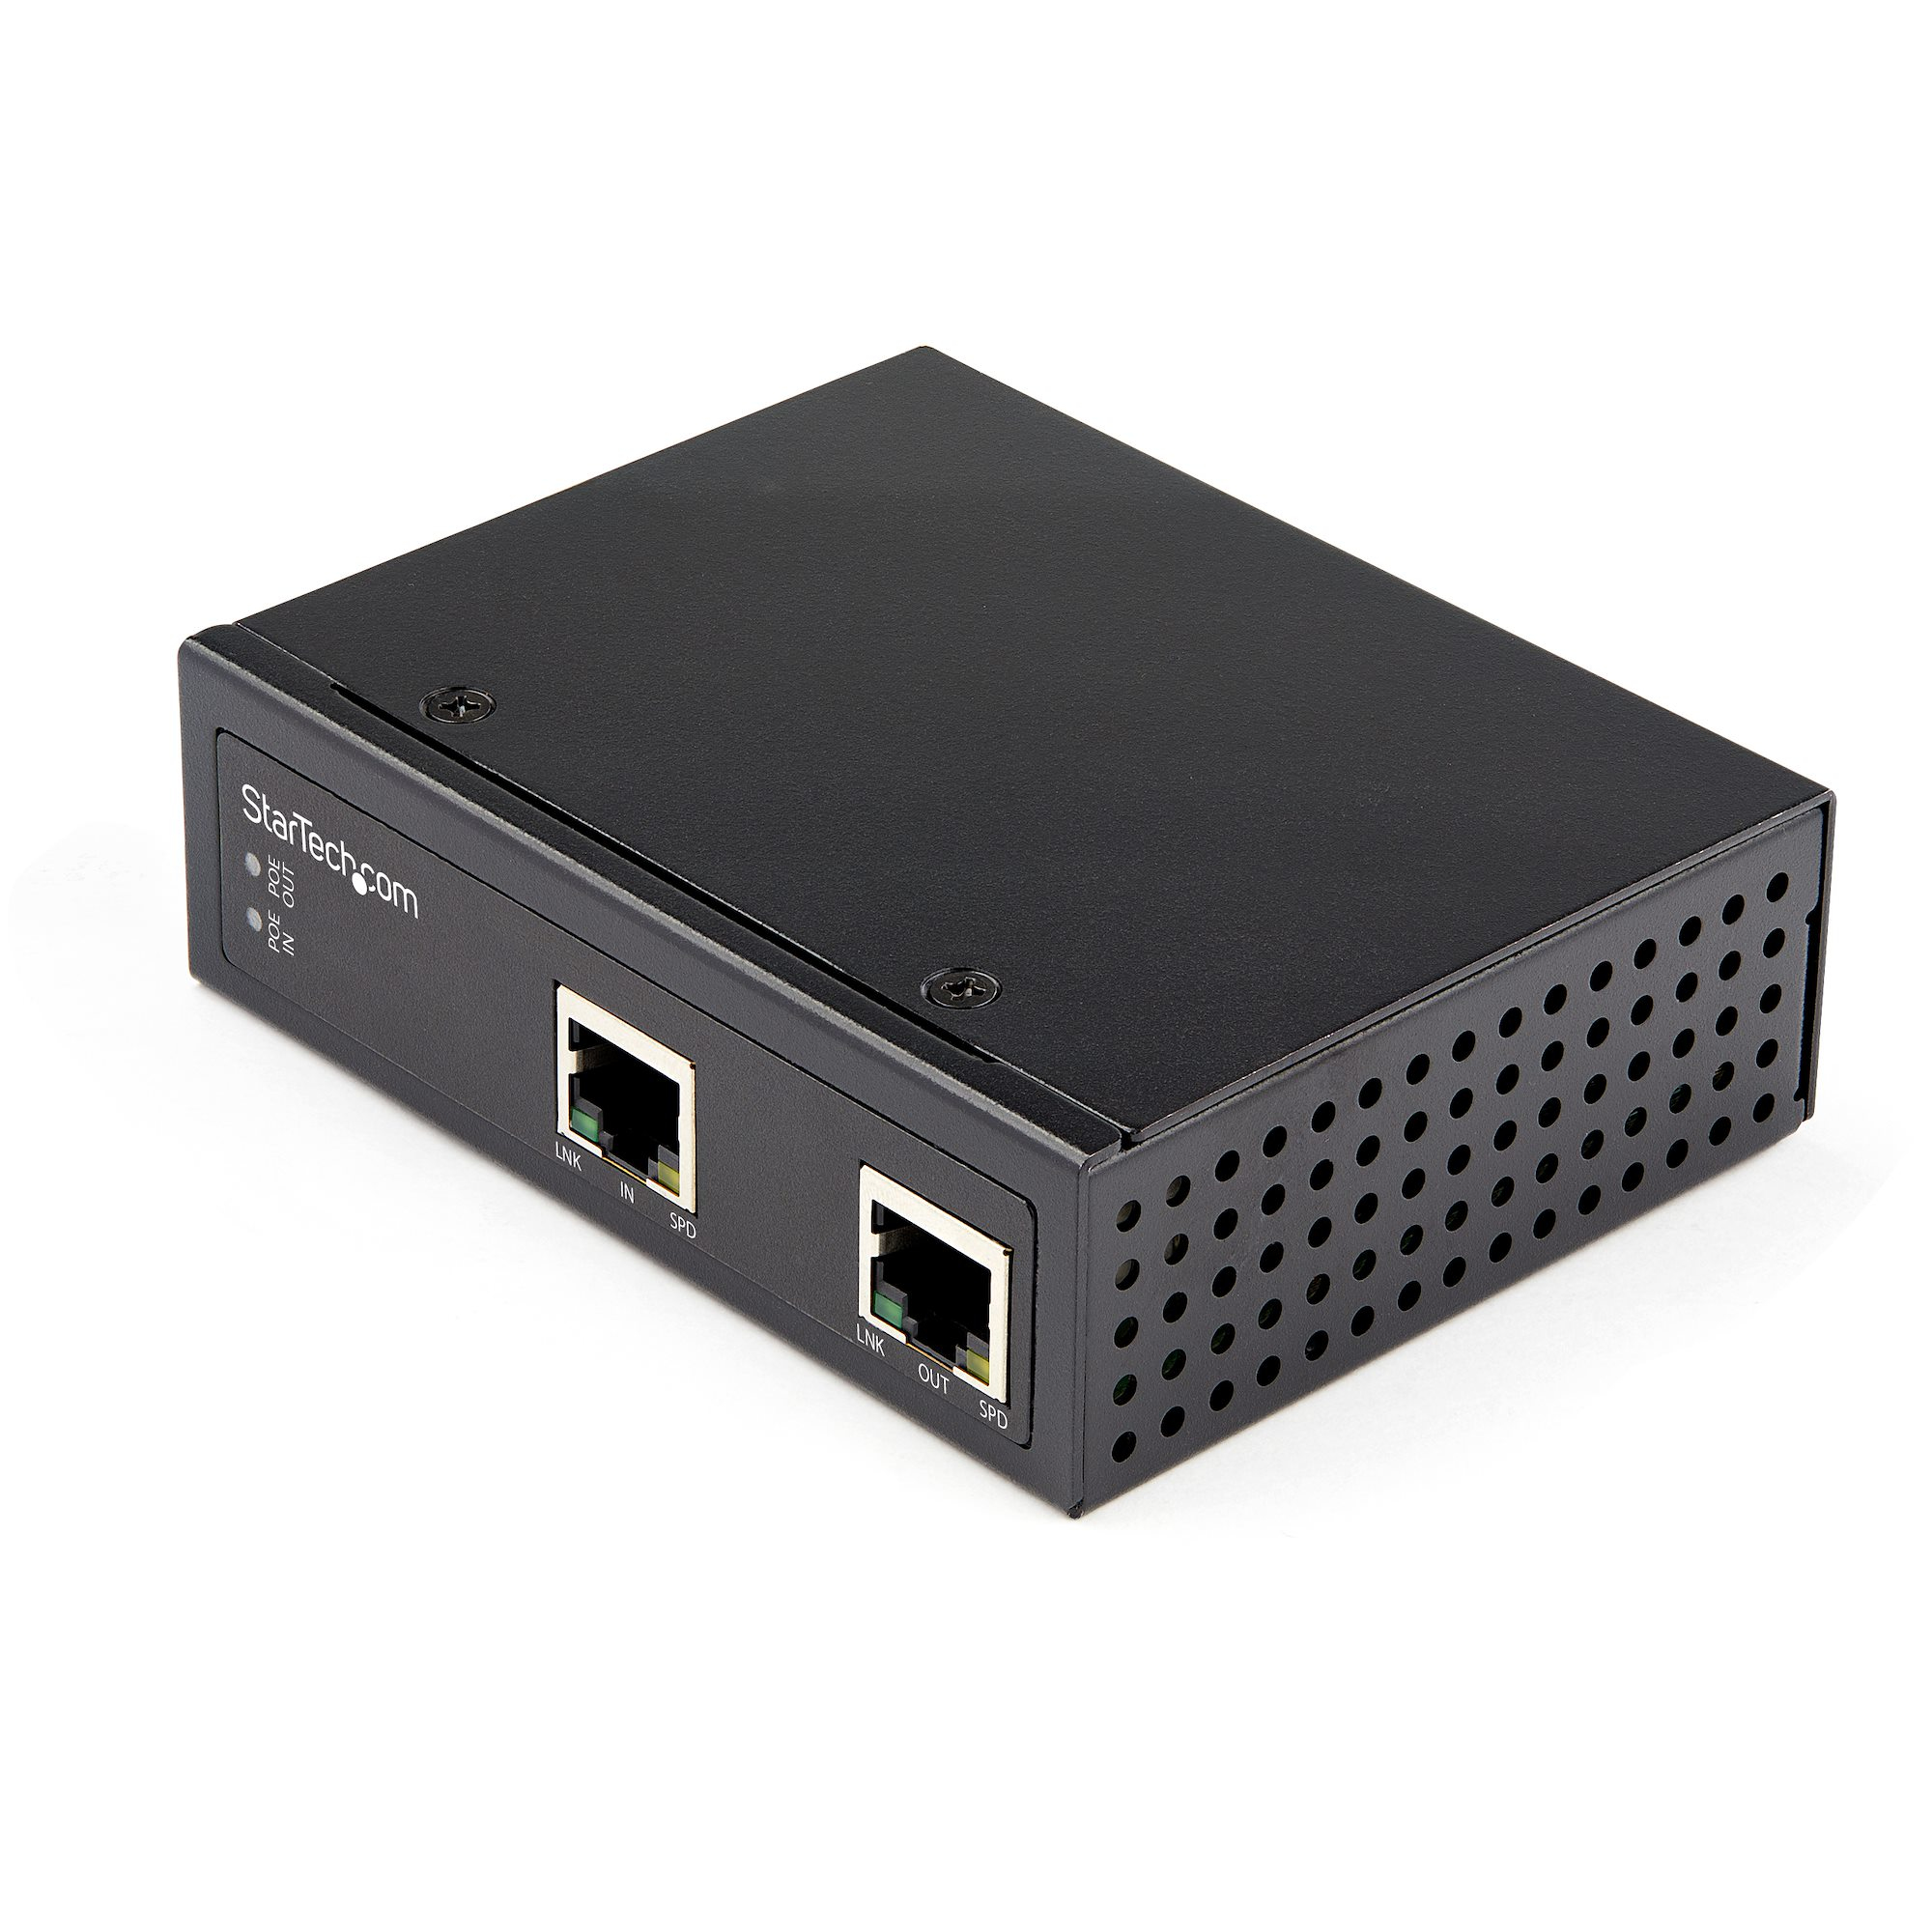 StarTech.com Industriell enports Gigabit PoE förlängare - 60 W 802.3bt PoE/PoE+/PoE++ - 100 m - Power Over Ethernet nätverksförlängare - IP30 - -40 &degC till 75 &degC